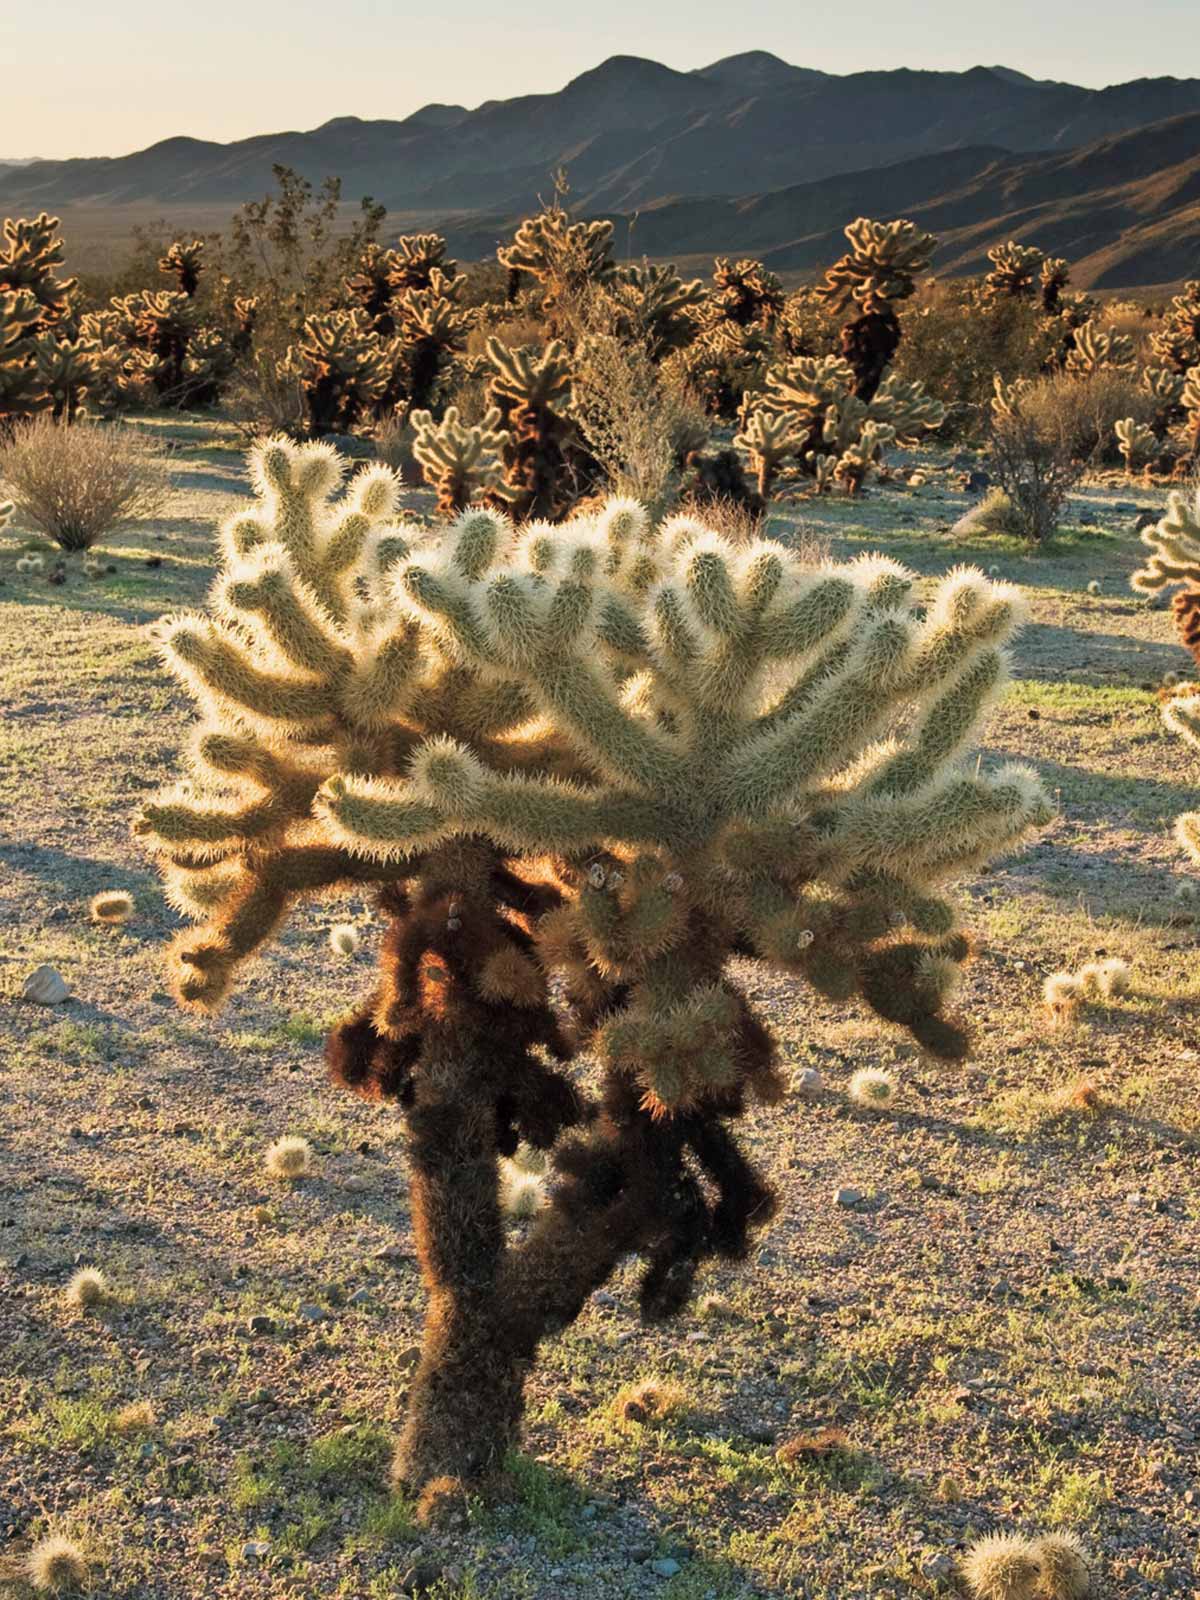 アメリカ ナショナルパークへの旅！ vol.6【サワロ国立公園】地球上で最も奇怪な植物サワロが生きる砂漠の国立公園！ | Stayu0026Travel |  Safari Online